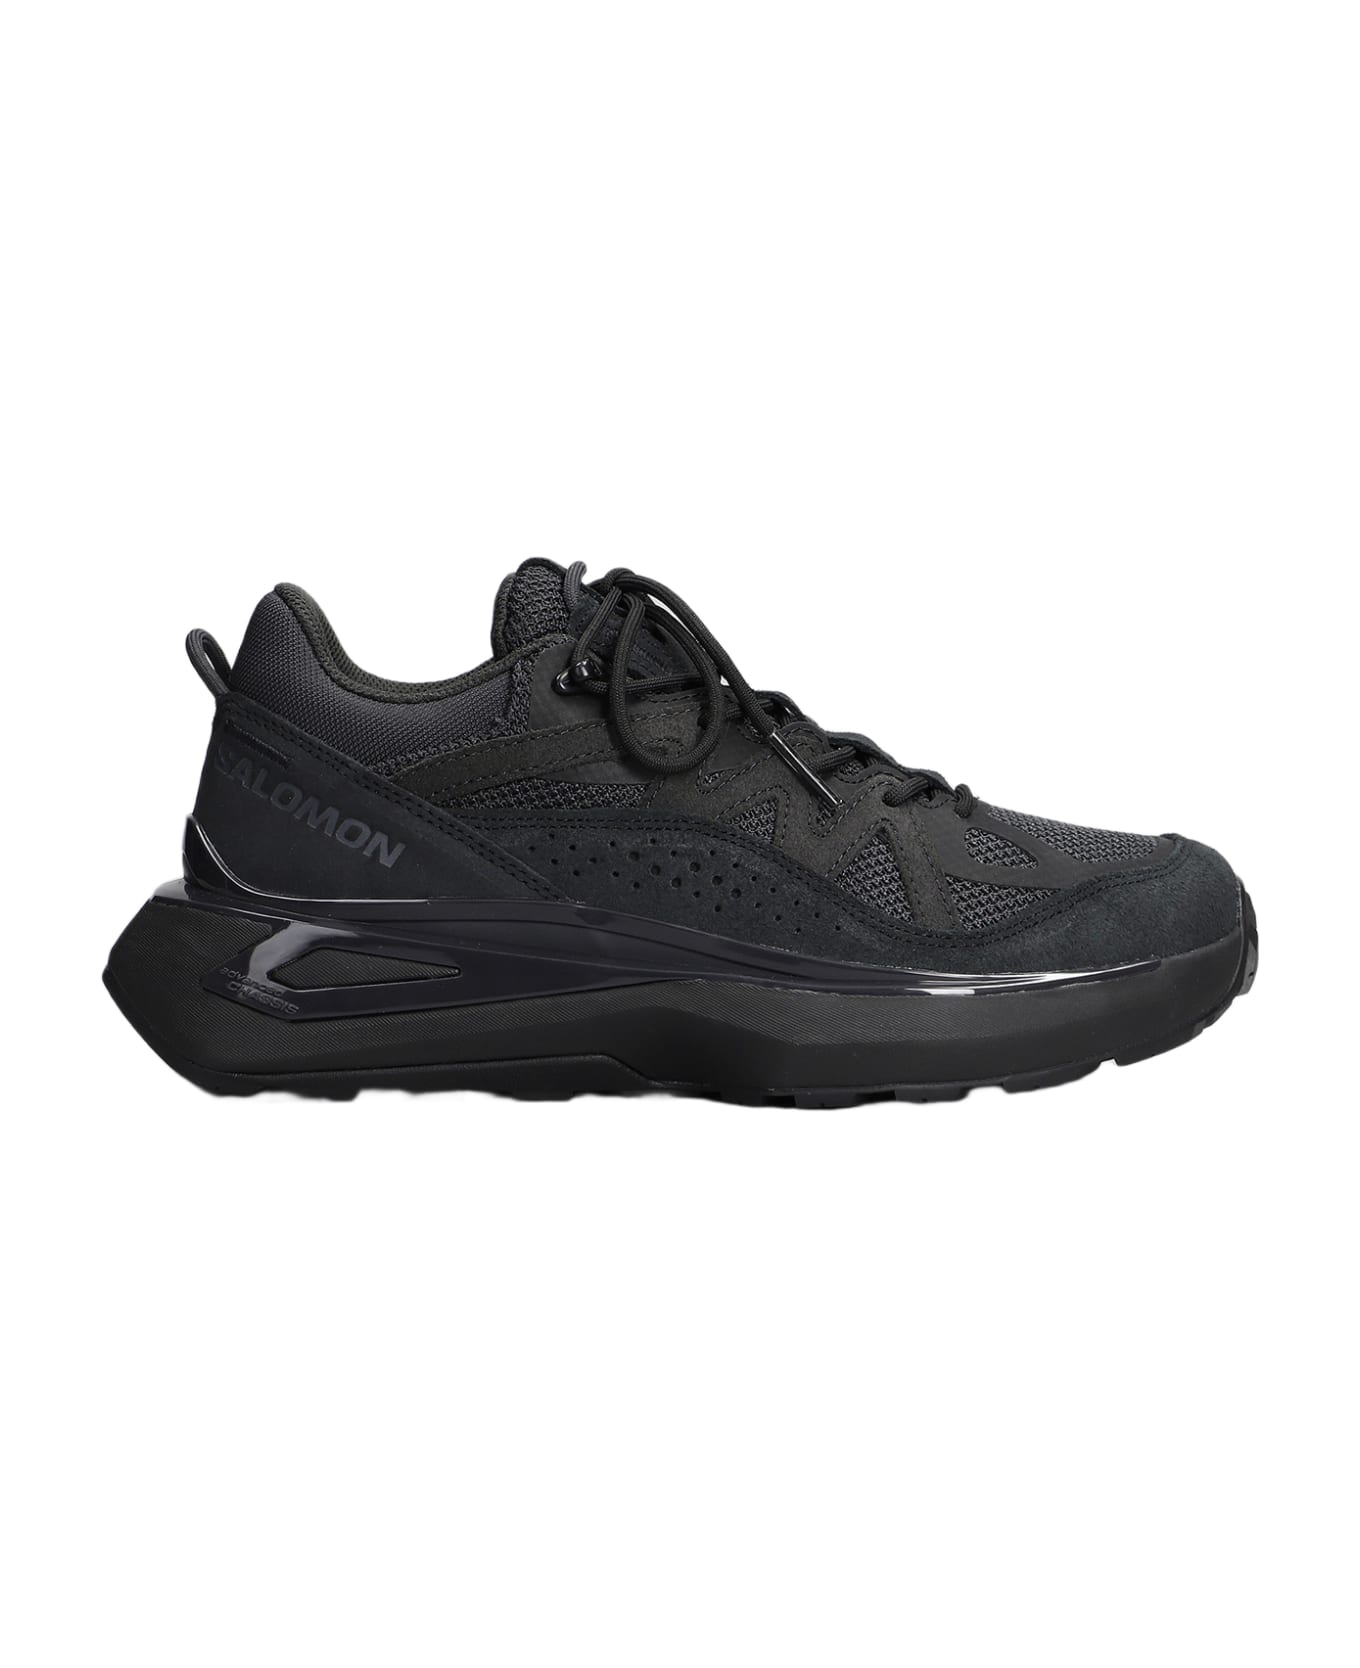 Salomon Odyssey Elmt Low Sneakers In Black Synthetic Fibers - black